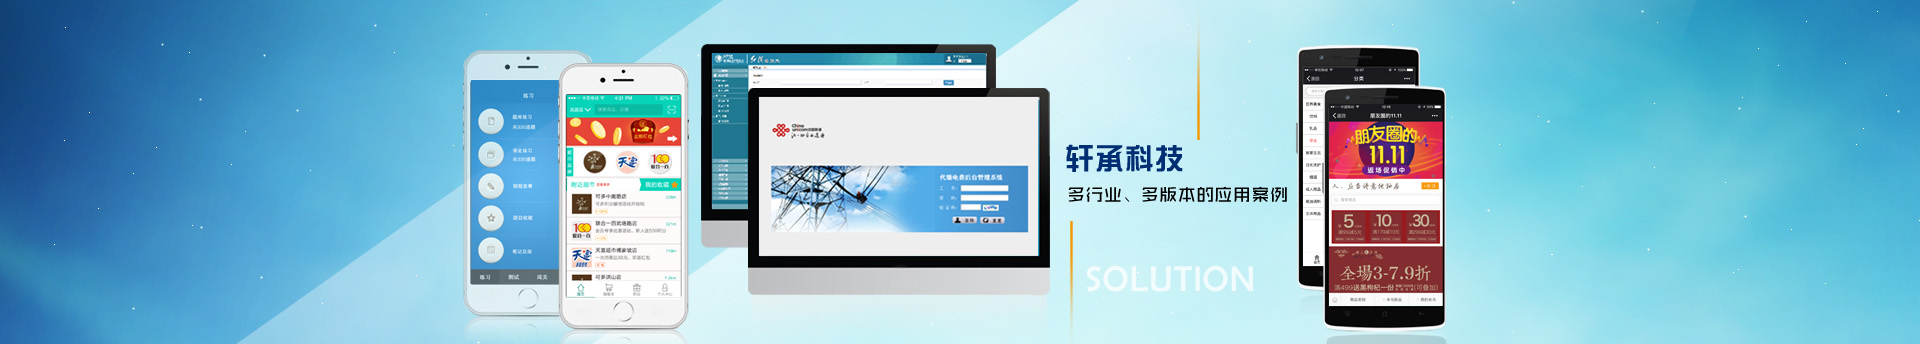 武汉软件开发-武汉网站建设-武汉APP开发-武汉微信小程序开发-武汉数据可视化开发—微信平台开发